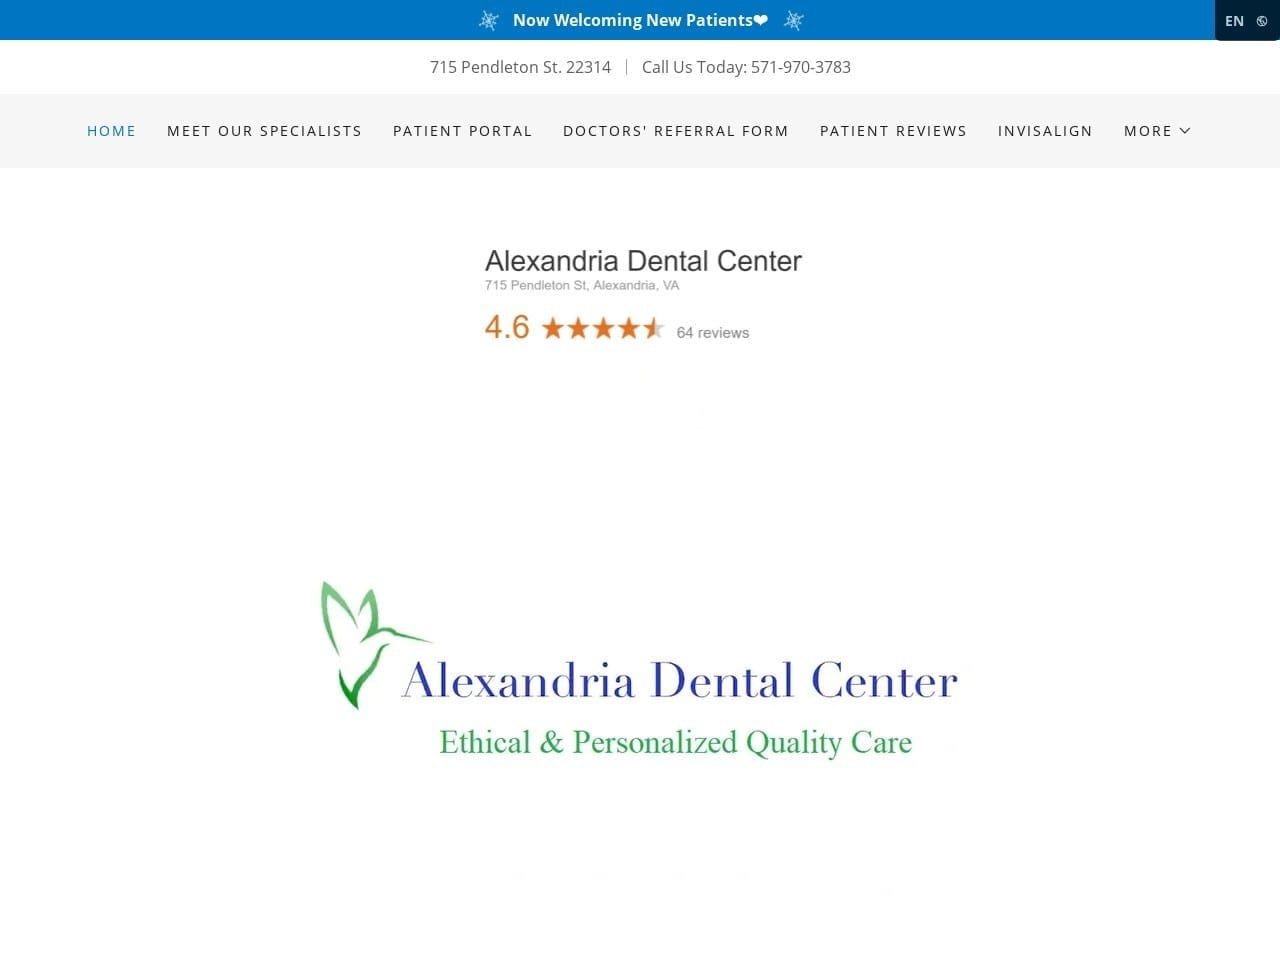 Alexandria Dental Center Website Screenshot from alexandriadentalcenter.com